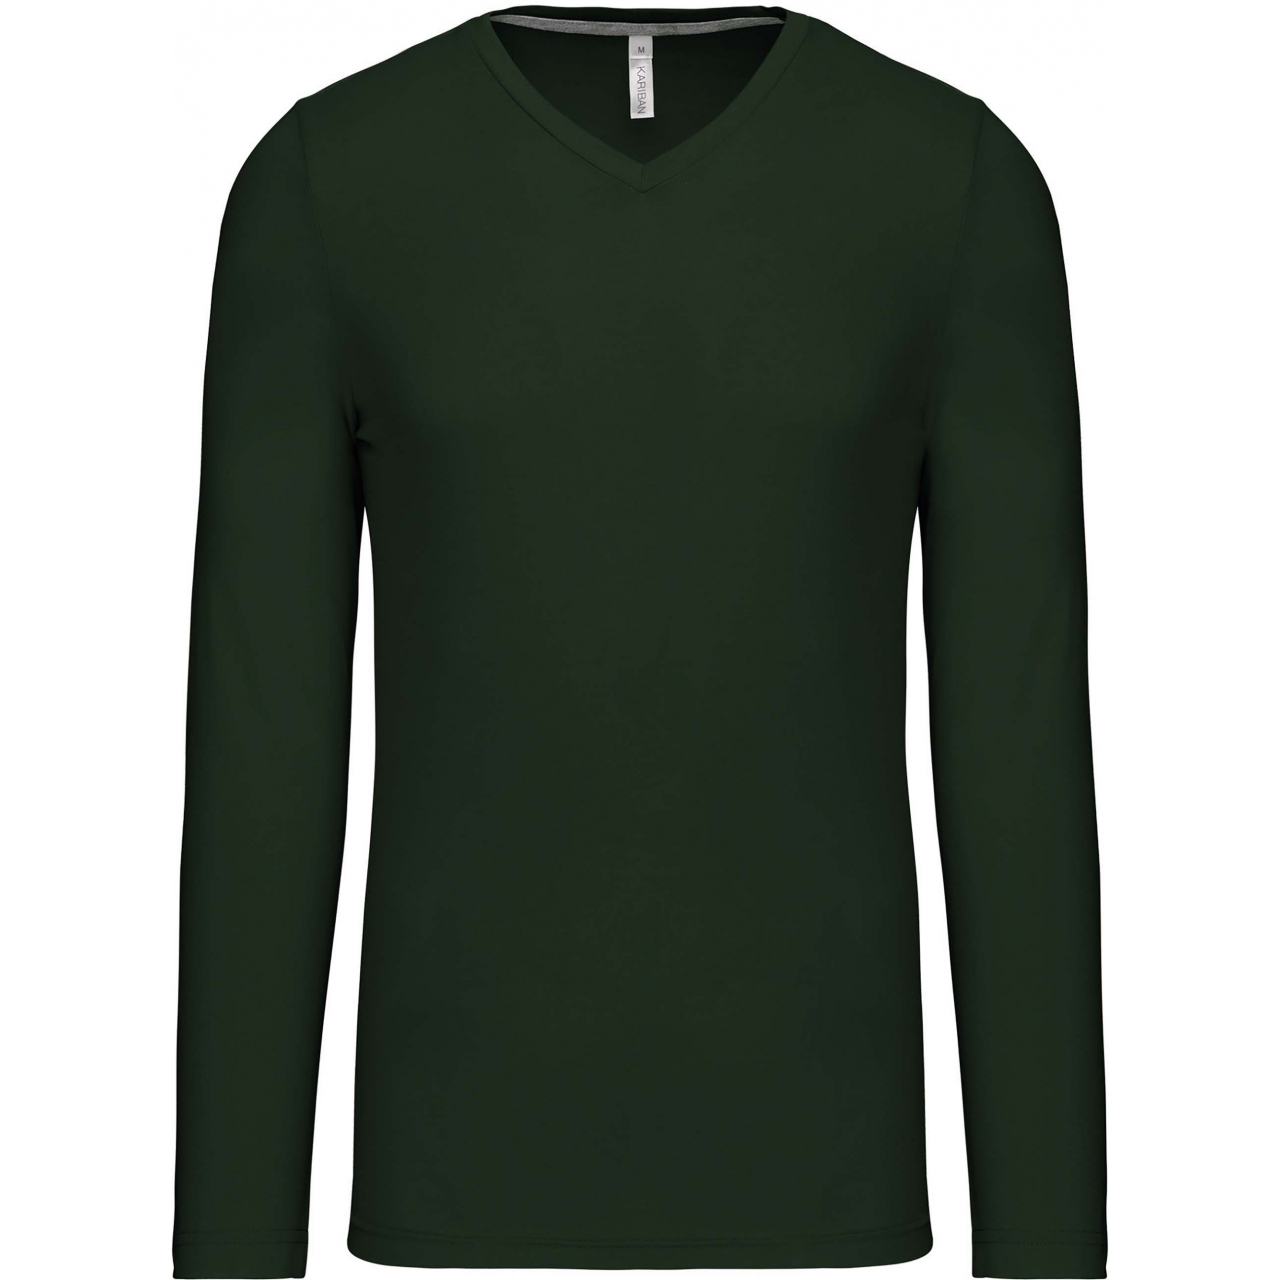 Pánské tričko Kariban dlouhý rukáv V-neck - tmavě zelené, L